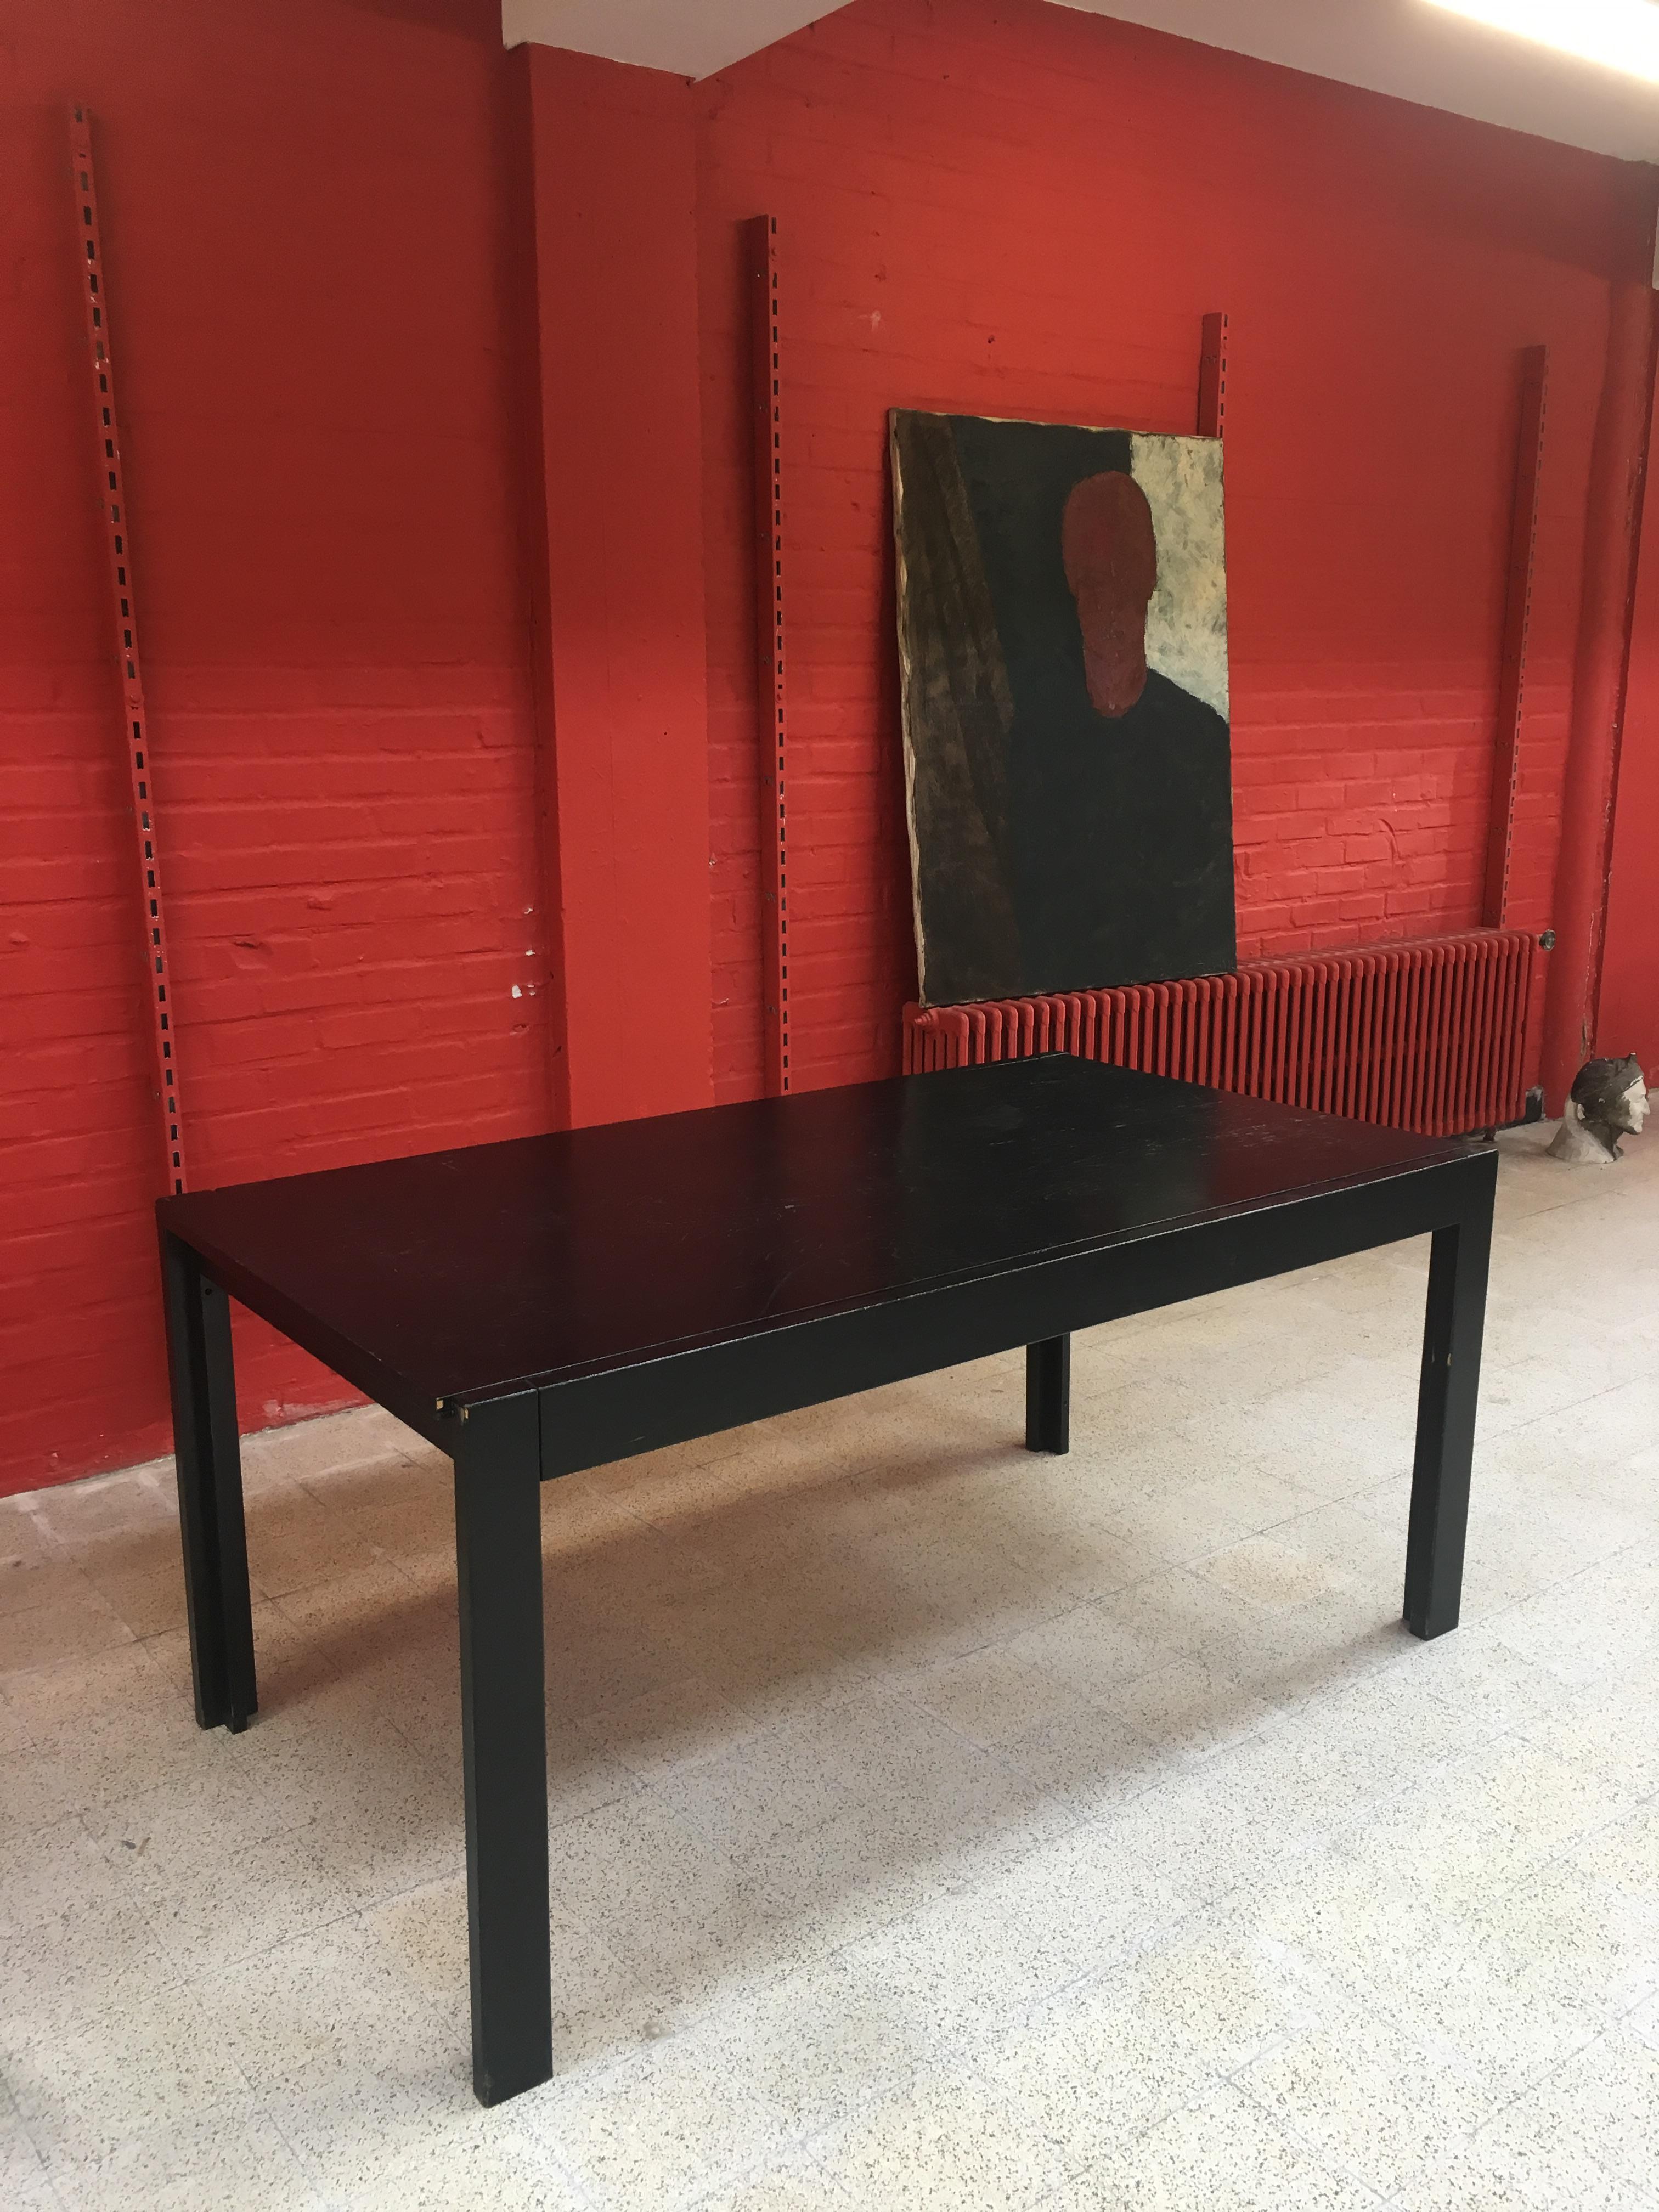 Table brutaliste en bois noirci, vers 1960-1970
bon état, patine à refaire
Dimension : 76 x 162 x 91 cm
avec extension 76 x 262 x 91 cm
6 chaises et 1 grand buffet sont également disponibles.